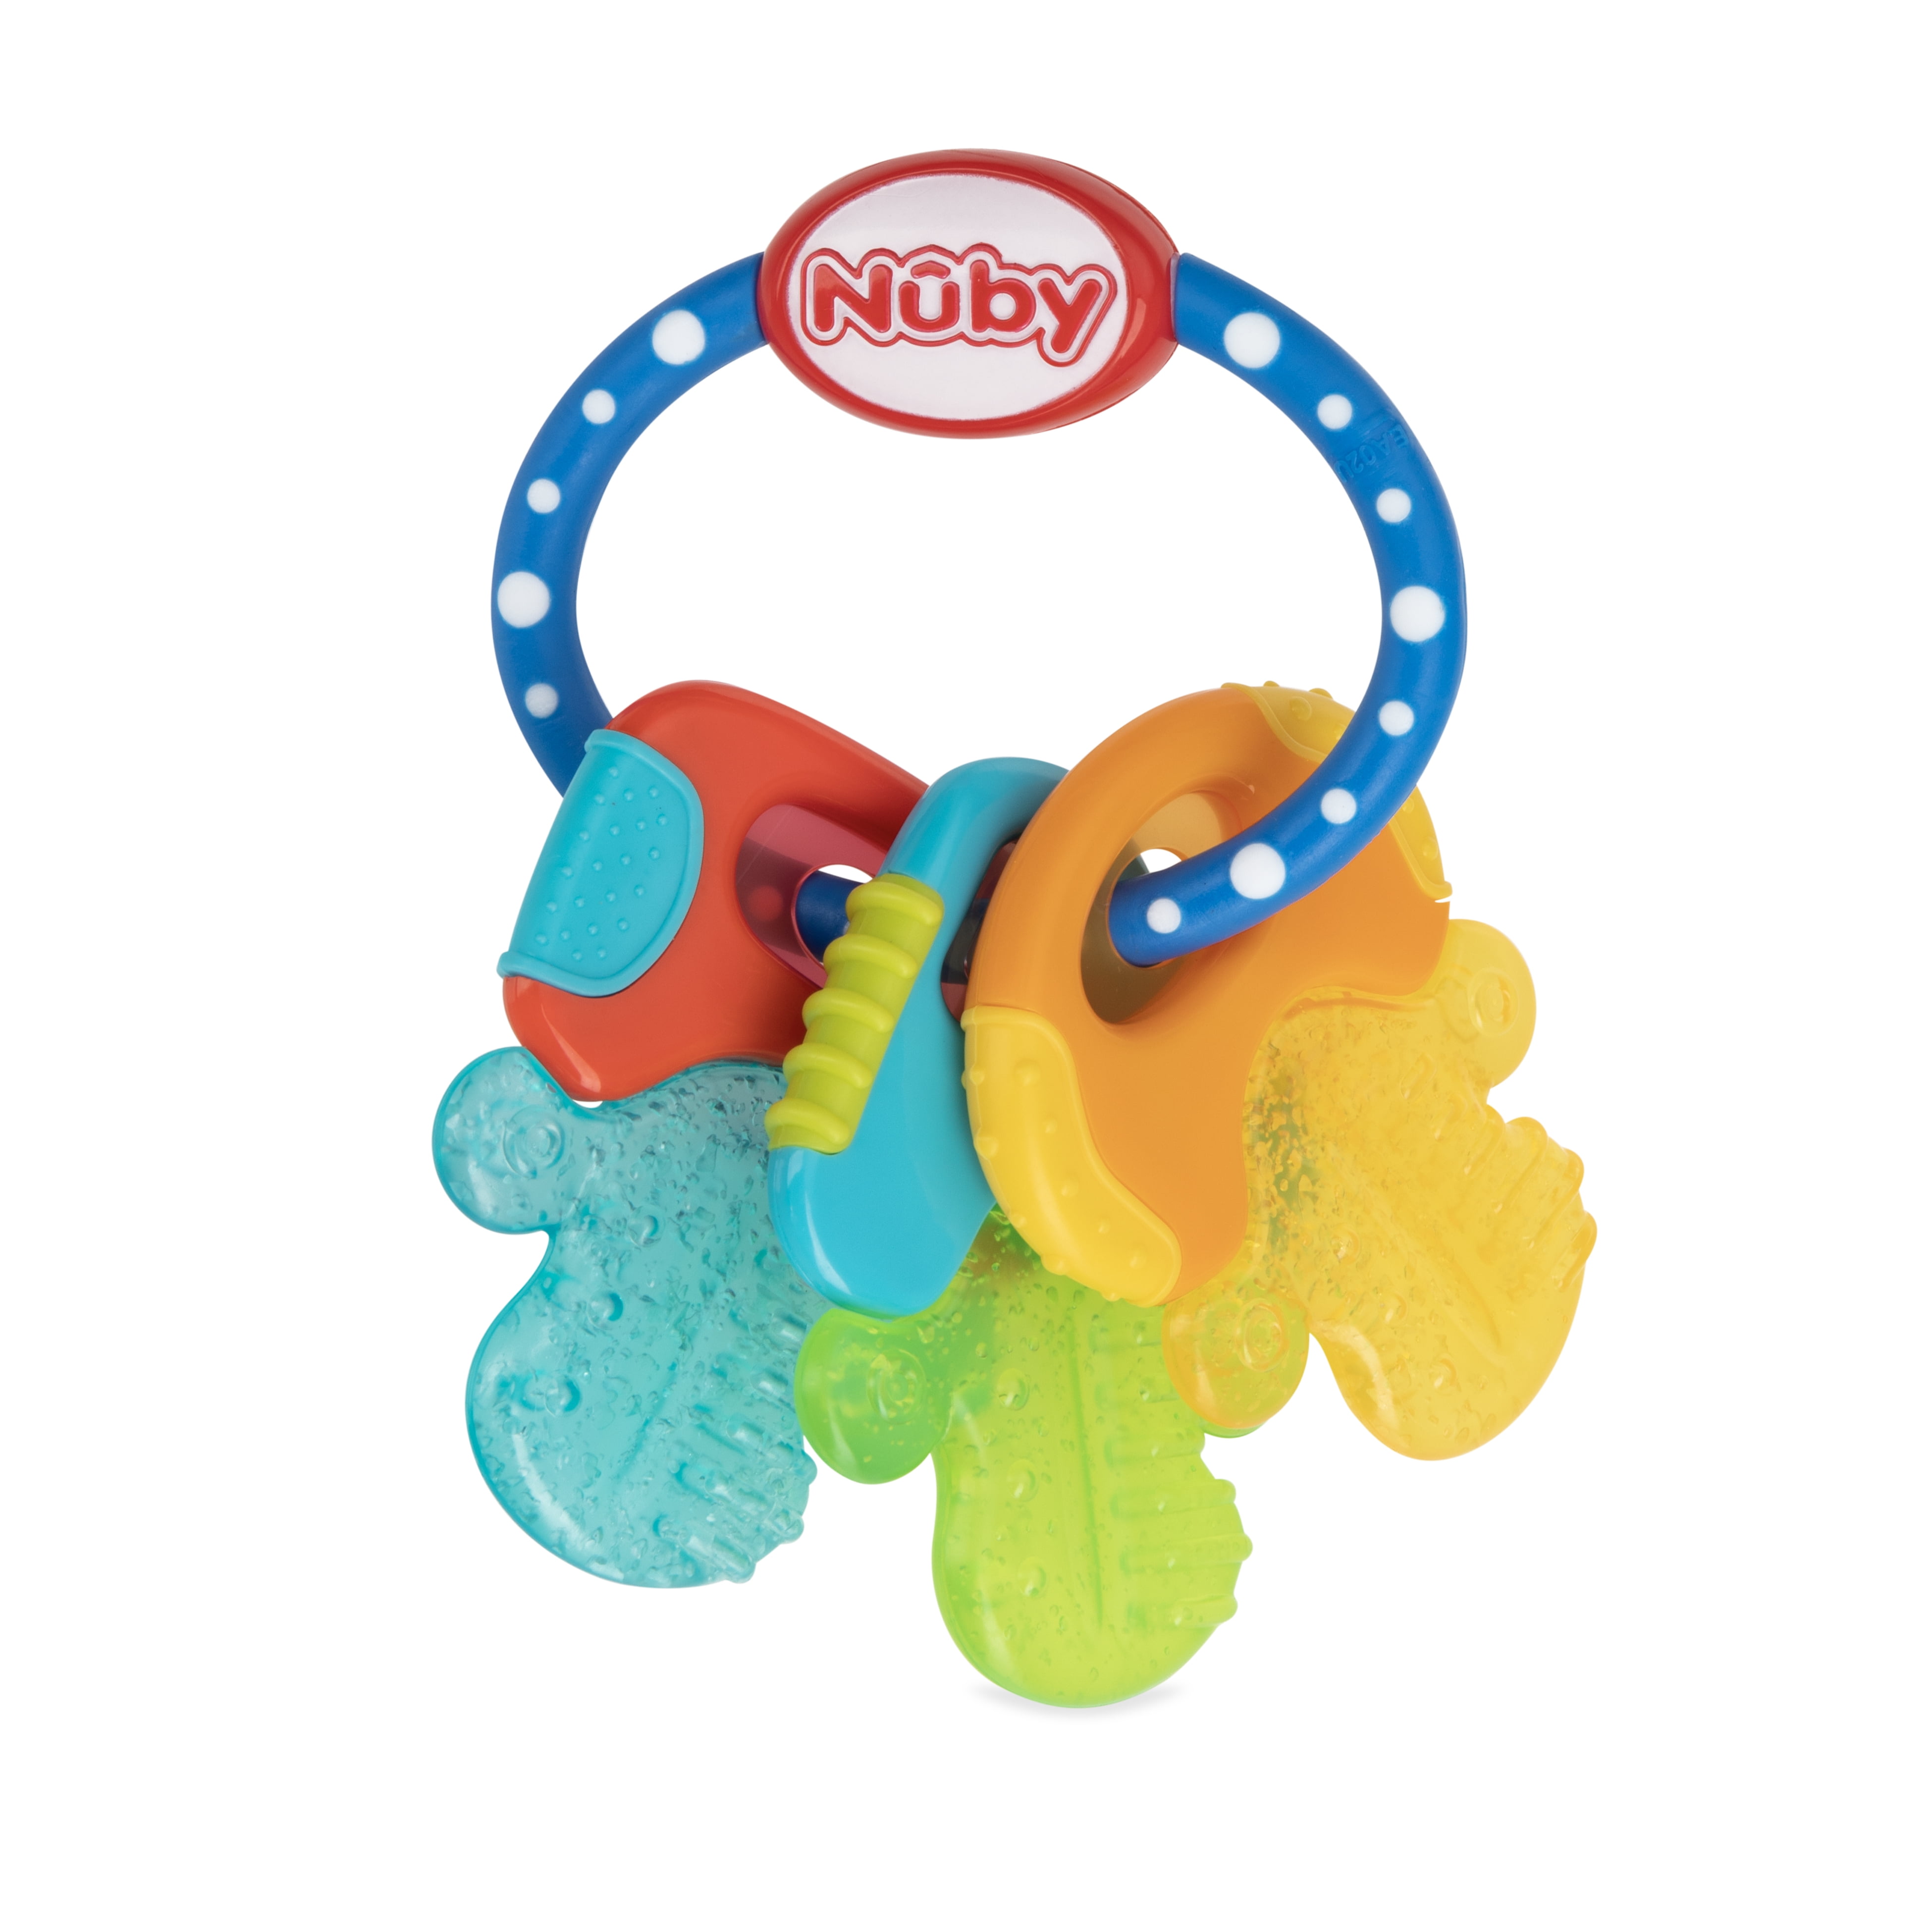 Nuby Ice Gel Baby Teether Toy Soft Teething Keys Soothing Bite Multi-surfaced 